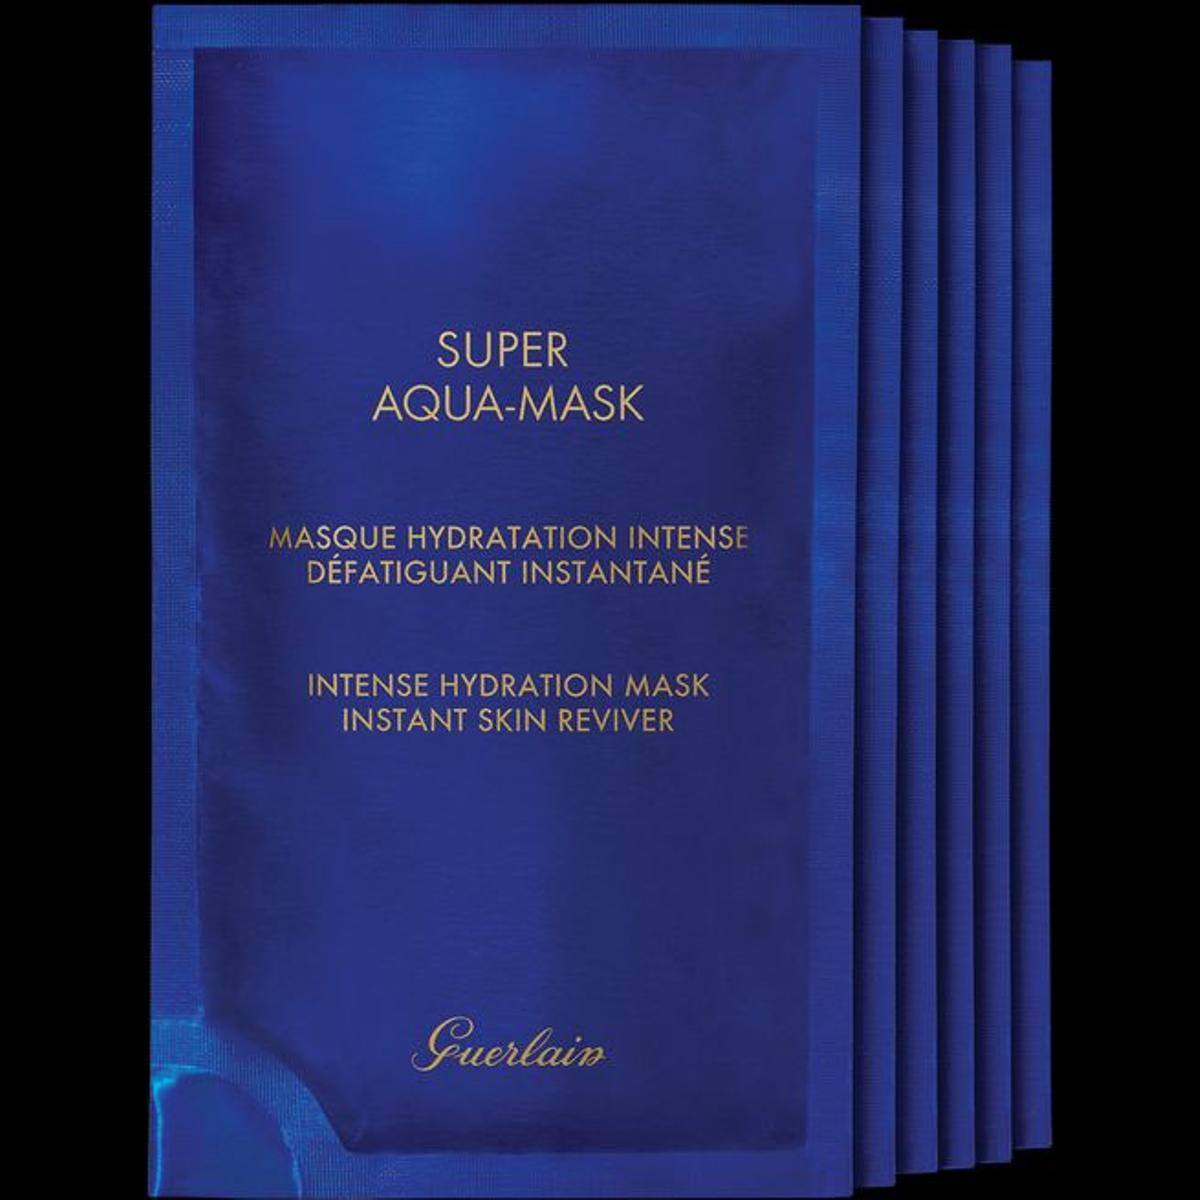 Super Aqua-Mask de Guerlain